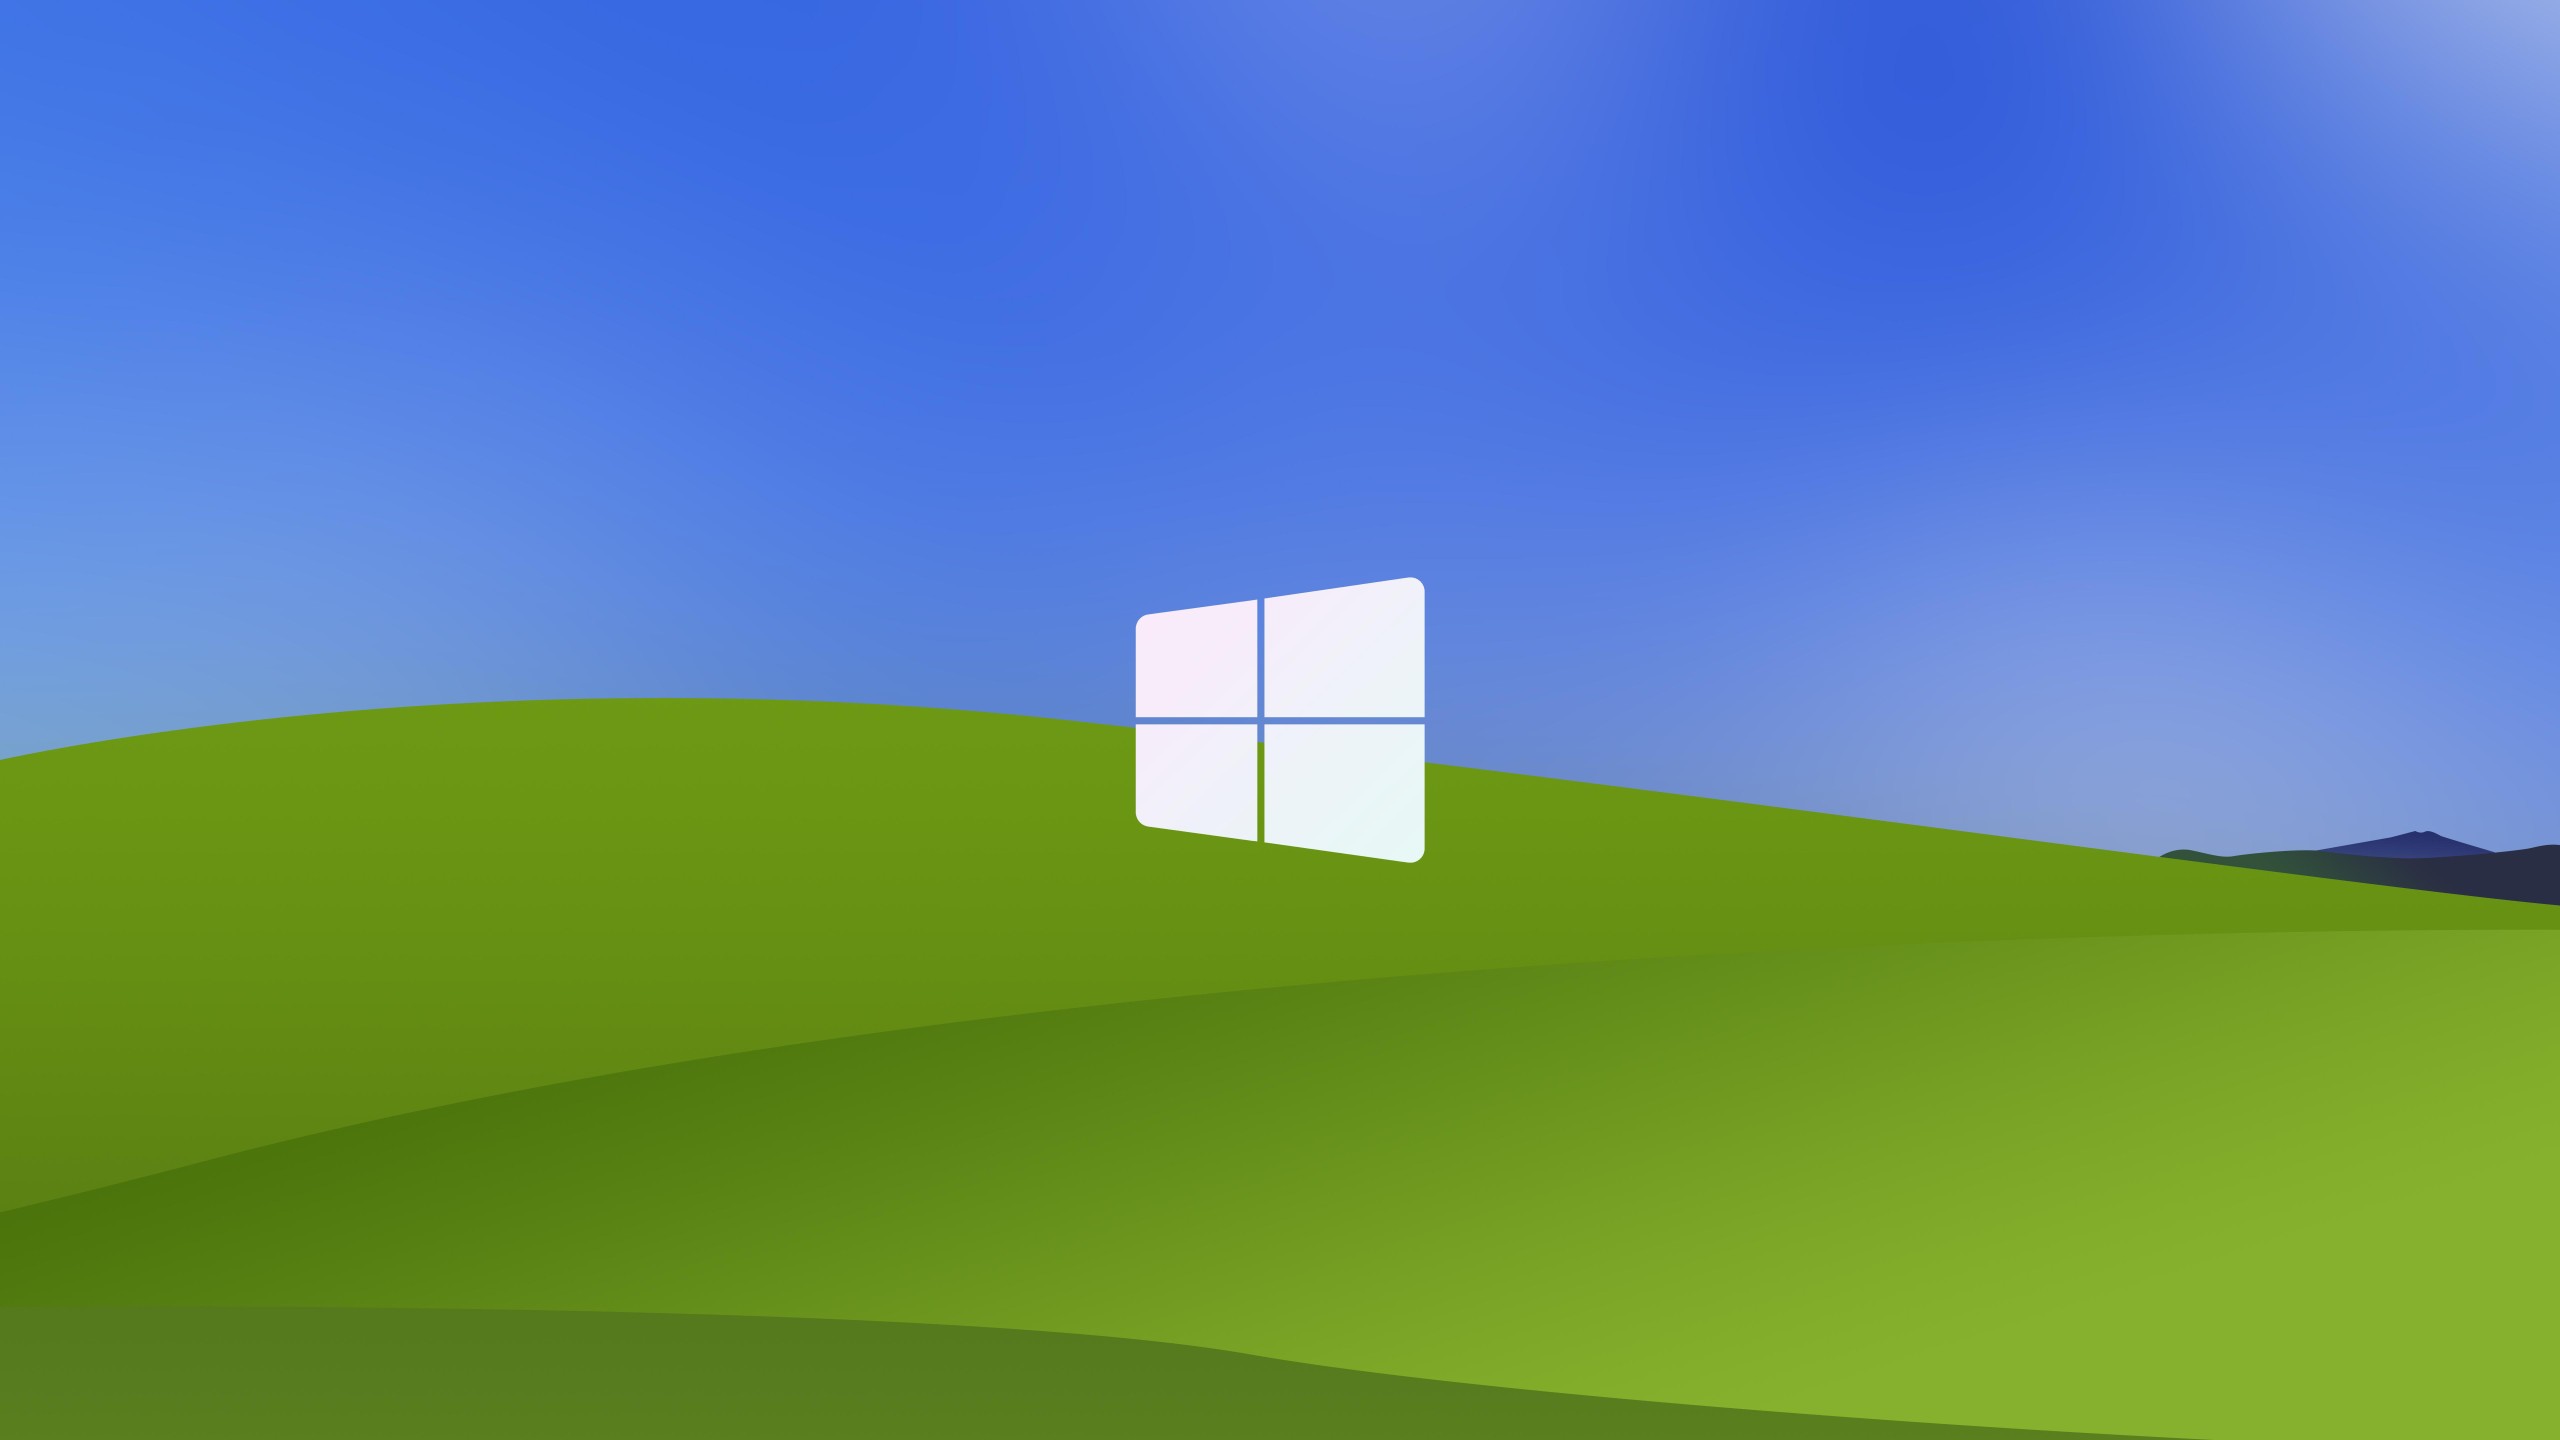 Bạn cần một bức hình nền Windows XP đẹp để tái hiện lại kí ức xưa? Đừng lo lắng, bức hình đến từ chúng tôi sẽ đưa bạn trở về thời điểm khi máy tính còn mới me và đầy kỷ niệm. Với độ phân giải 8K, mọi chi tiết trên bức hình đều sắc nét và tươi đẹp đến kỳ diệu.